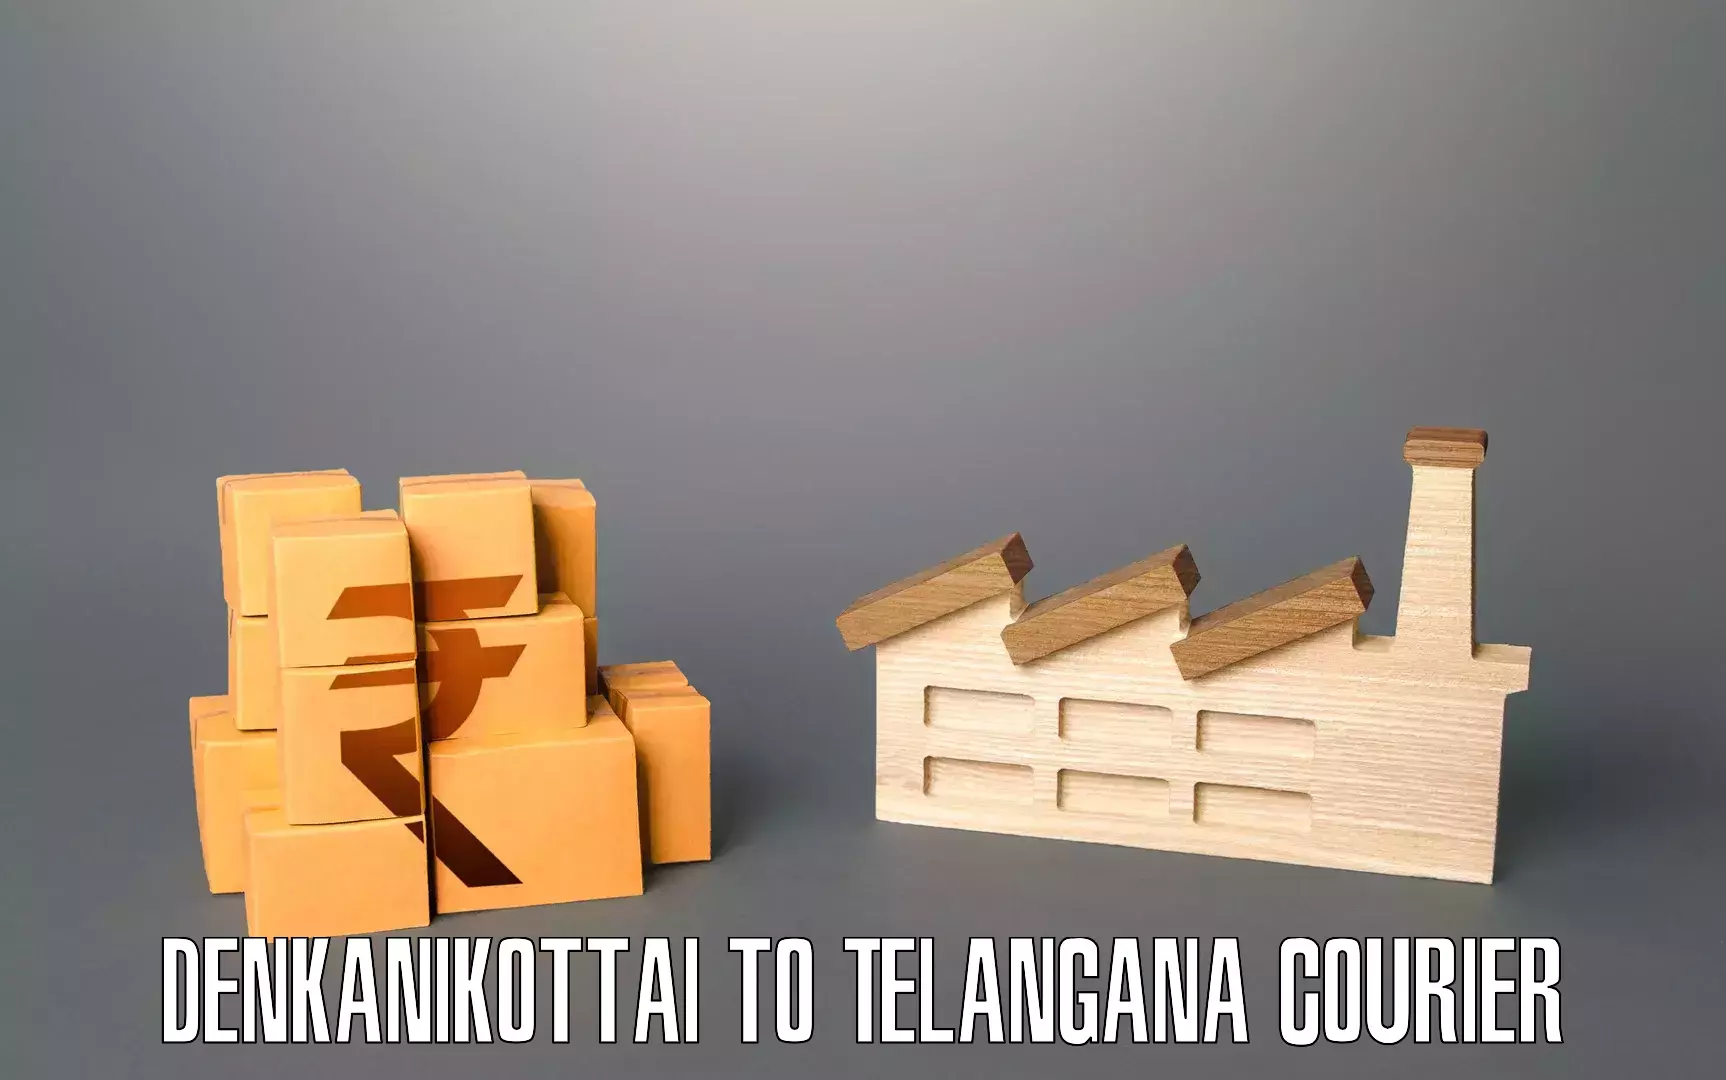 Household moving experts Denkanikottai to Manthani